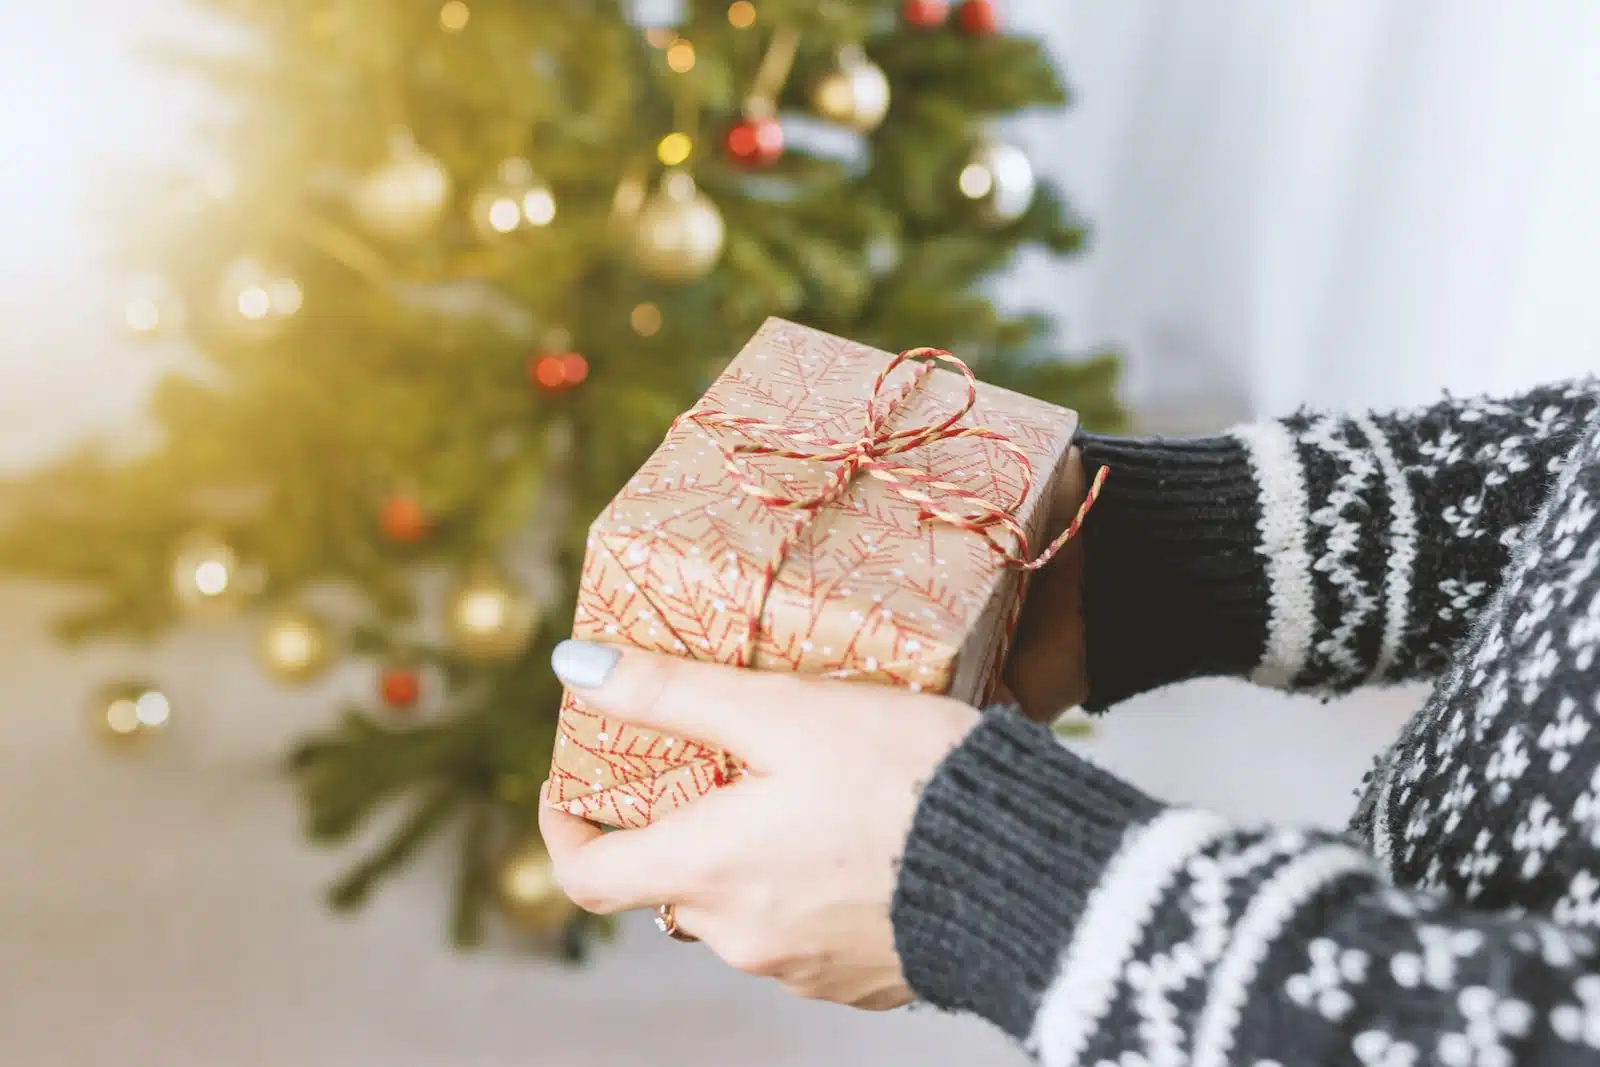 Comment réaliser des cadeaux personnalisés pour Noël ? 